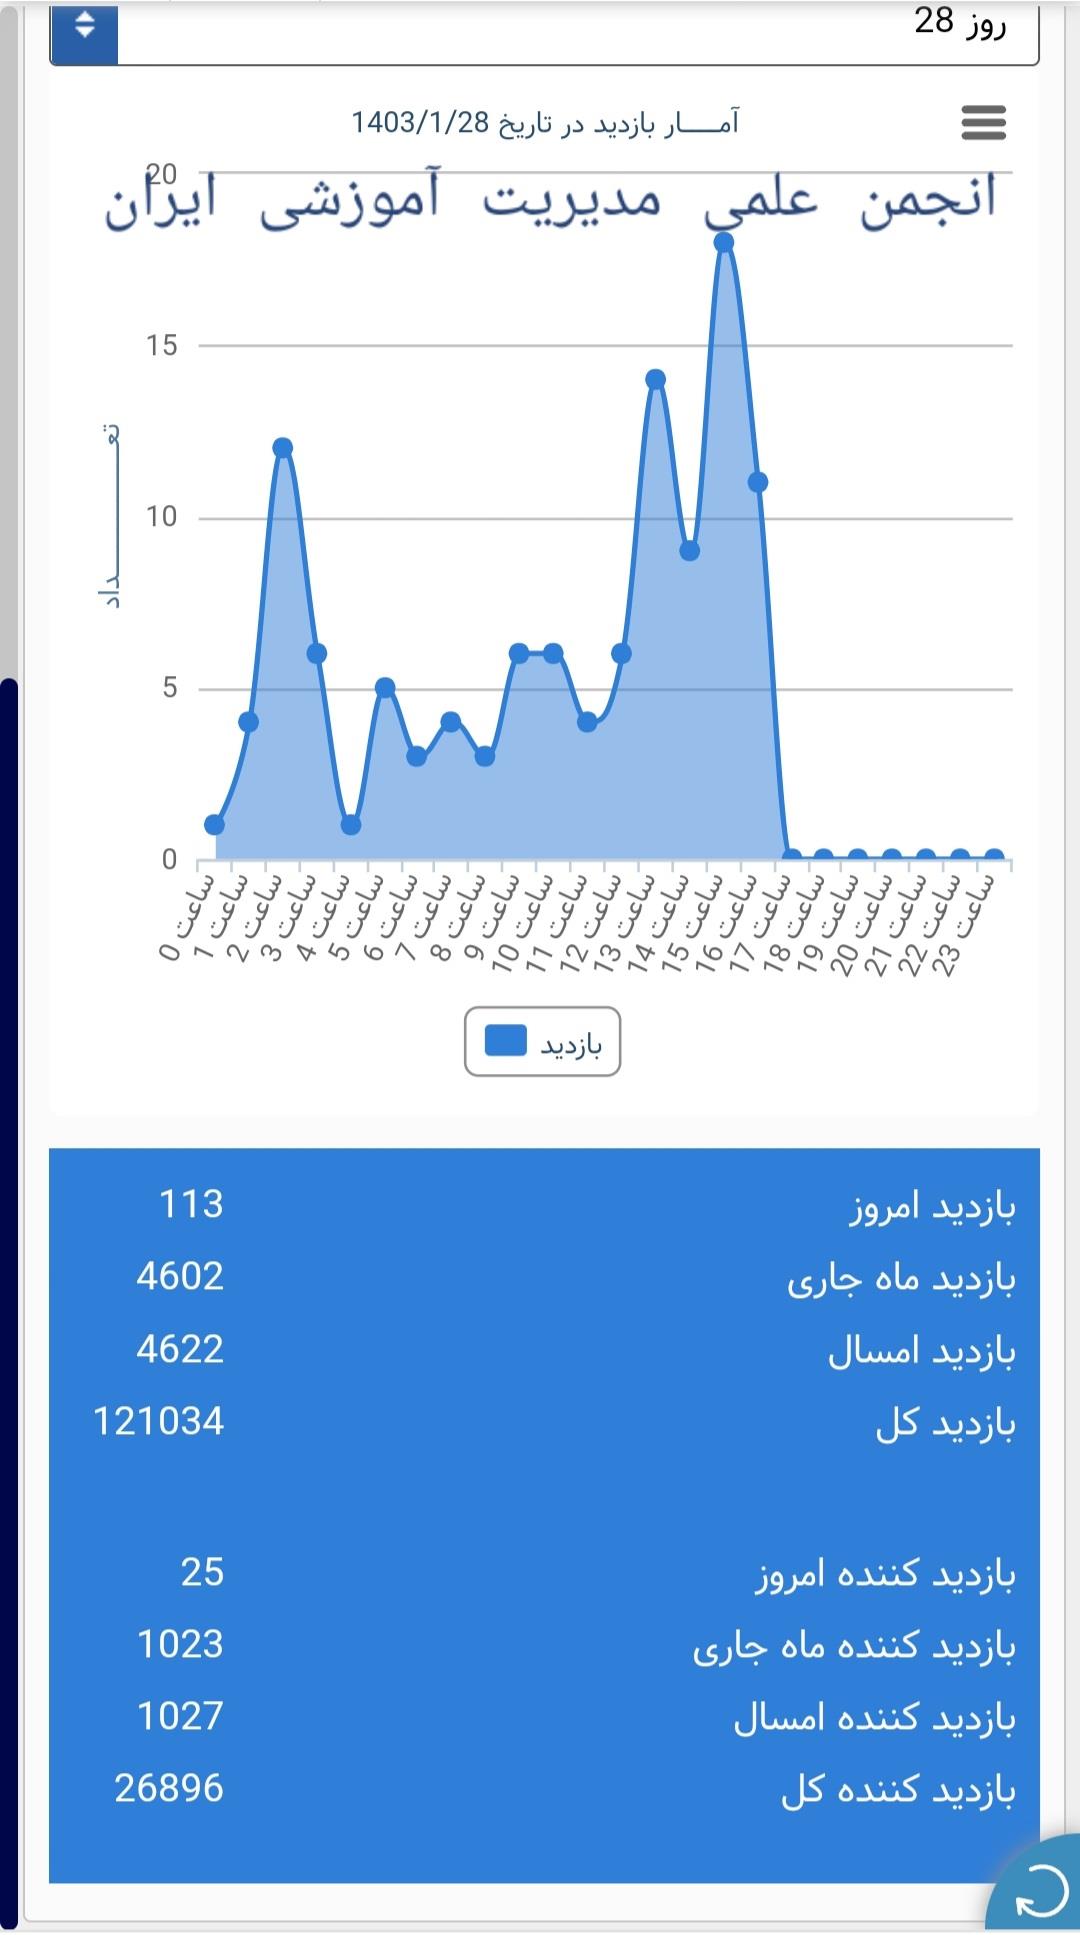 آمار بازدیدکنندگان از سایت انجمن علمی مدیریت آموزشی ایران در تاریخ ۲۸ فروردین ماه،  سال ۱۴۰۳